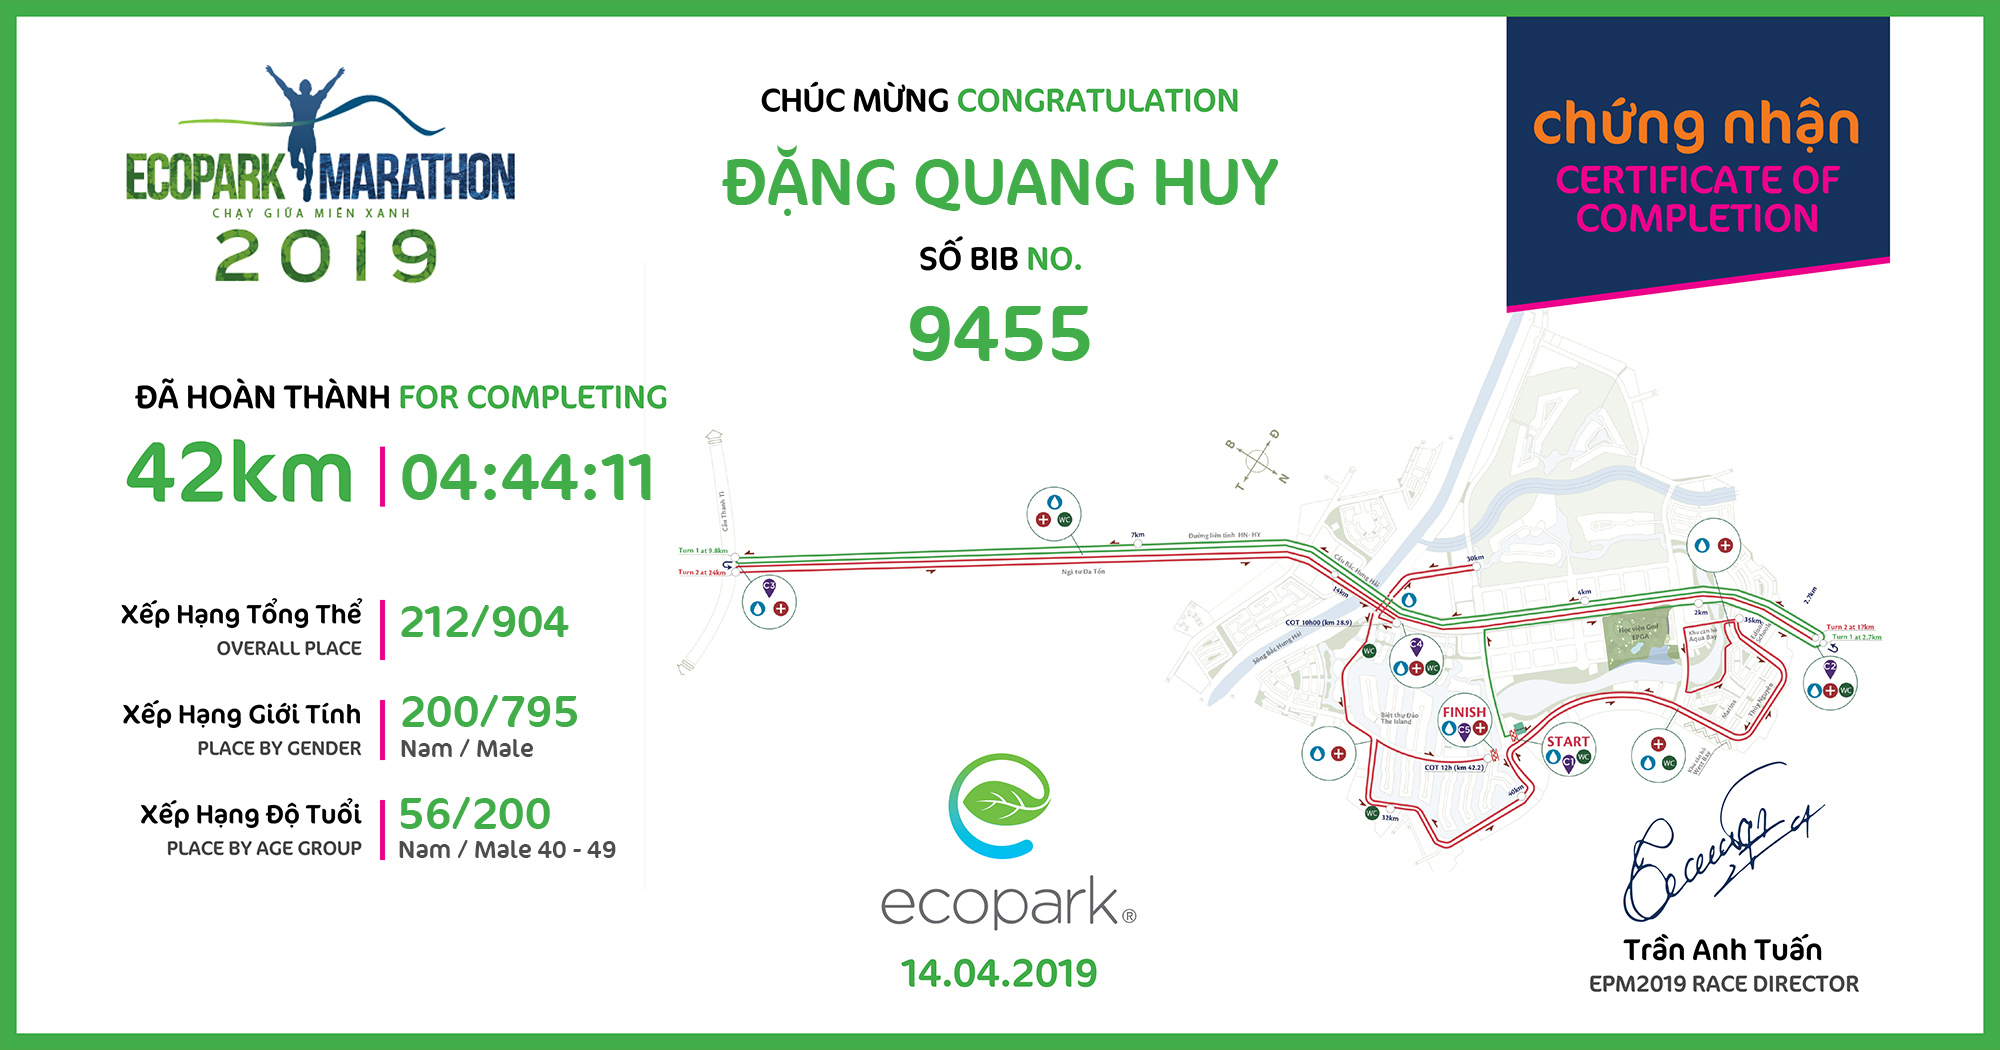 9455 - Đặng Quang Huy